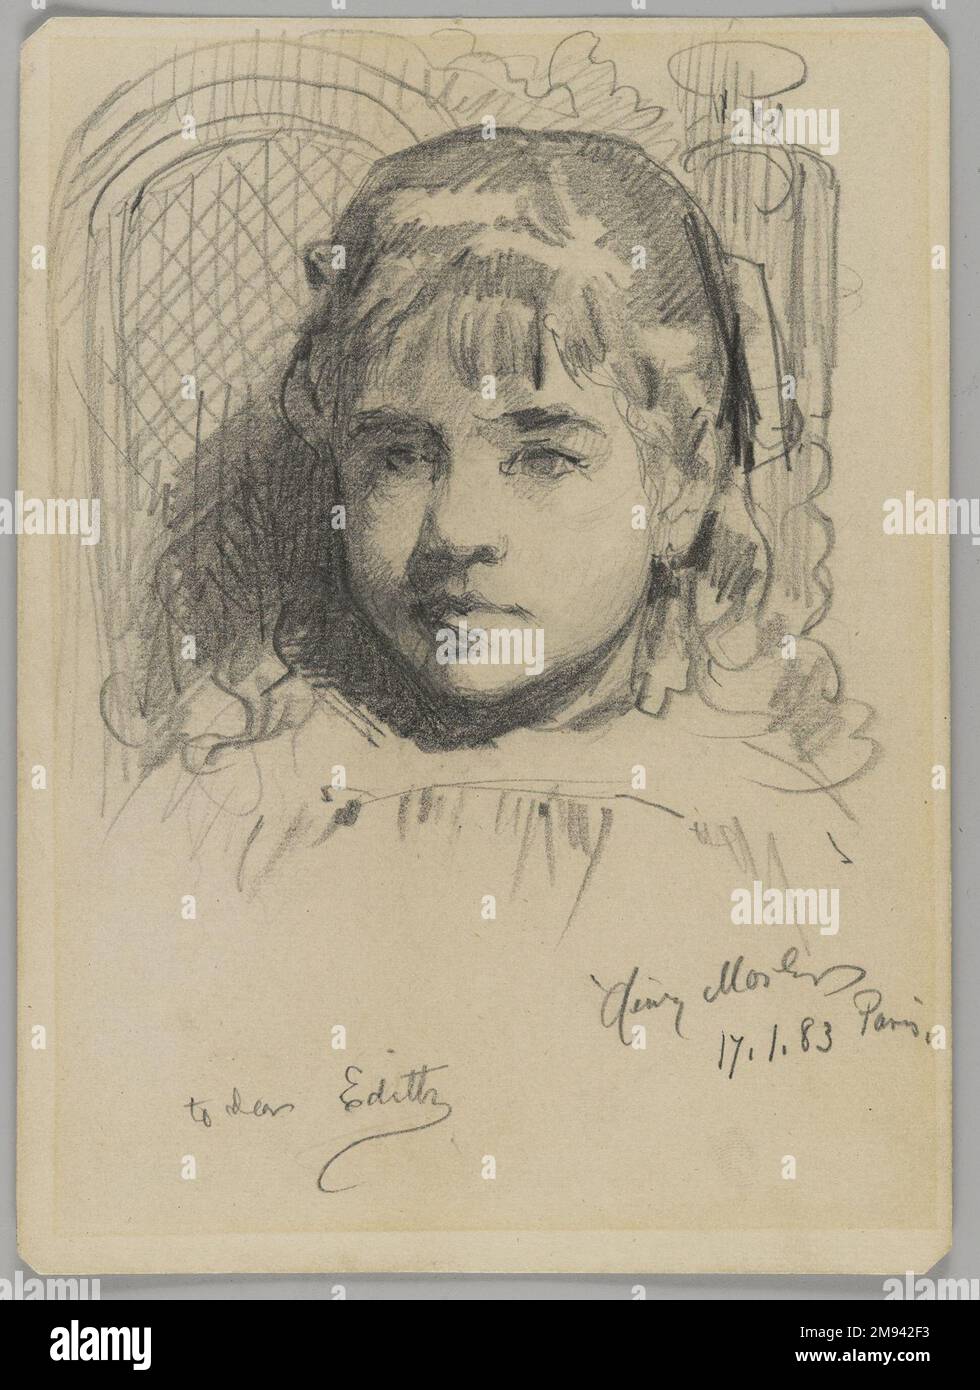 Ritratto della figlia dell'artista Henry Mosler (americano, 1841-1920). , 17 gennaio 1883. Grafite su carta media, color crema, wove, foglio: 6 3/16 x 4 5/8 poll. (15,7 x 11,7 cm). Arte americana 17 gennaio 1883 Foto Stock